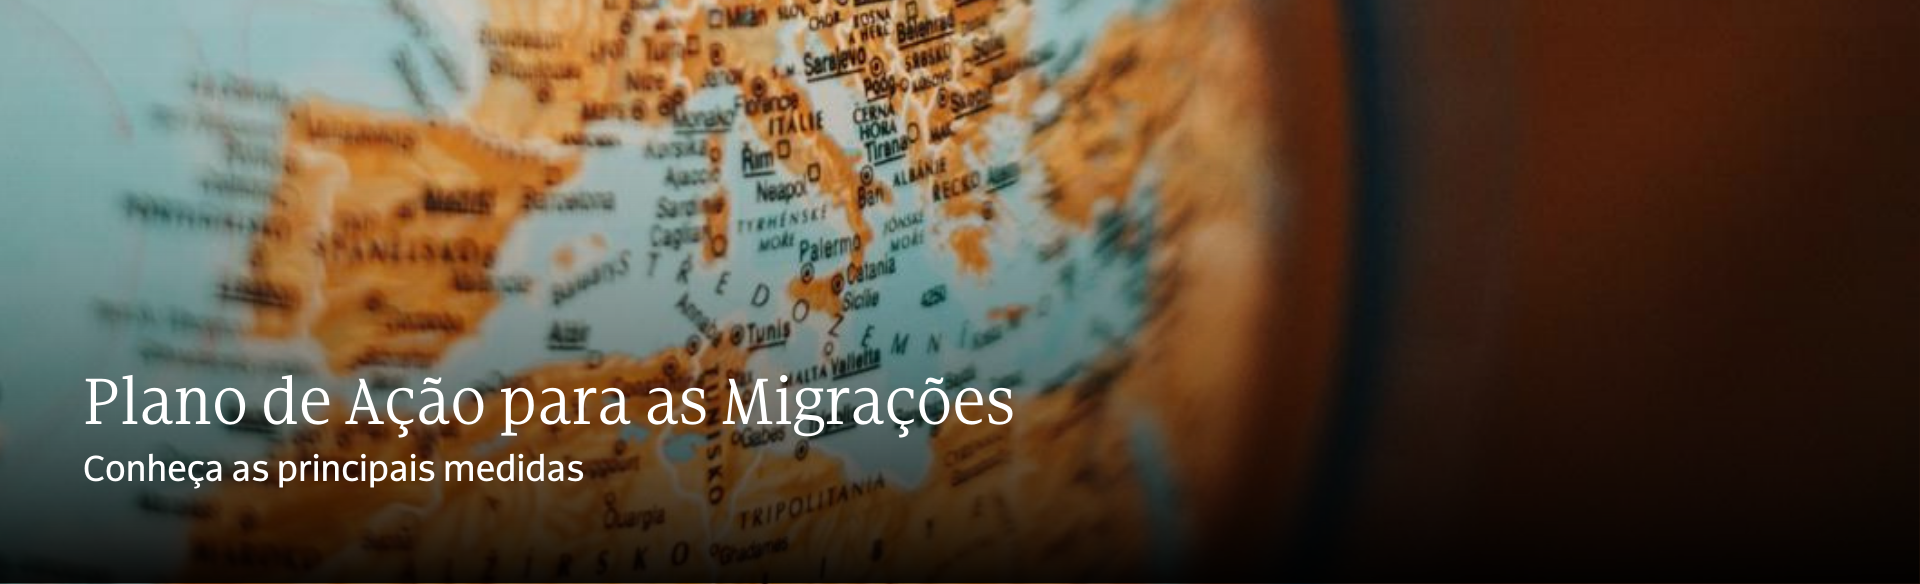 Plano de Ação para as Migrações: conheça as principais medidas